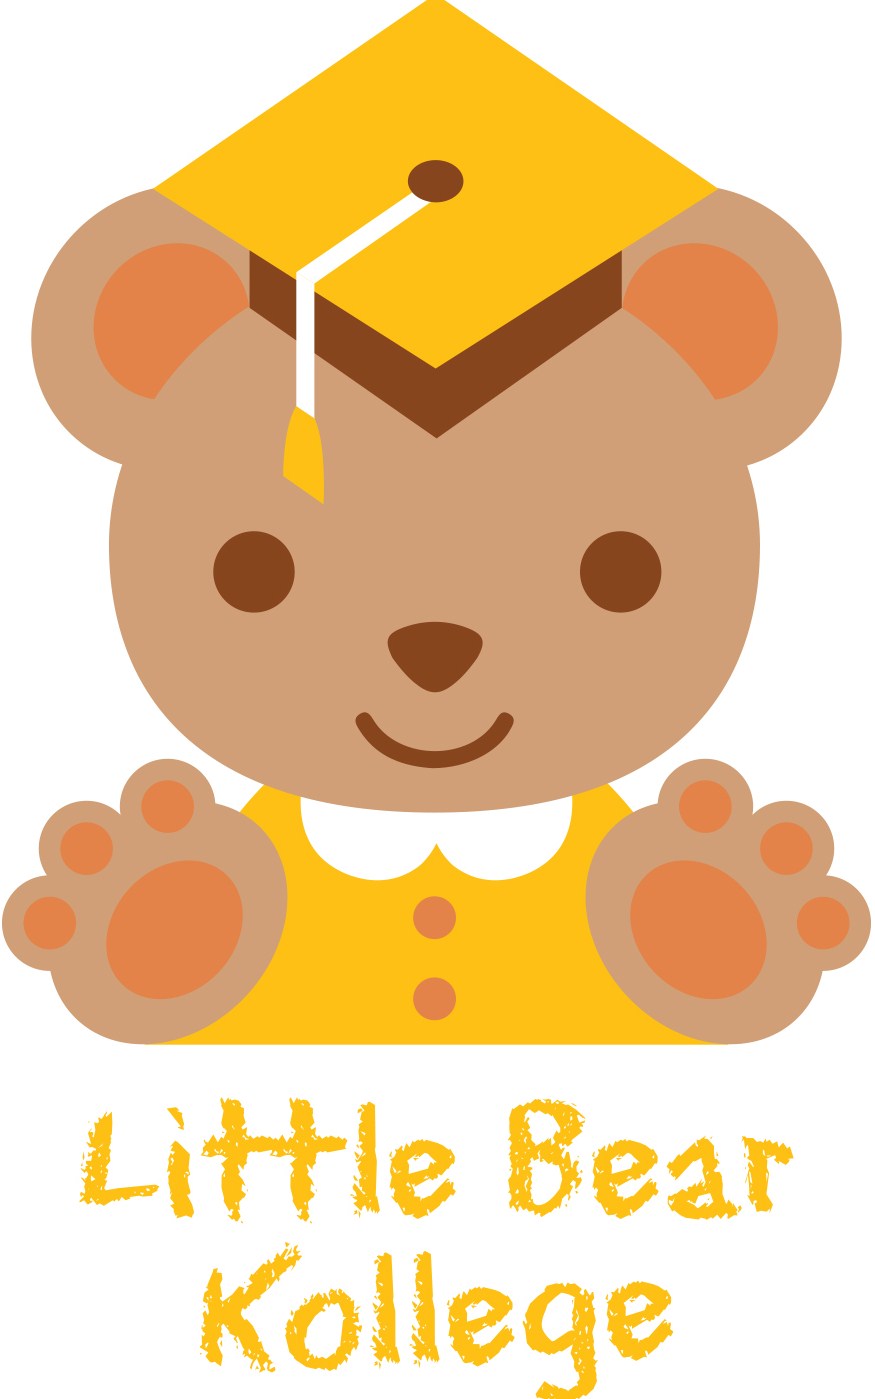 Little Bear Kollege Preschool and Learning Center